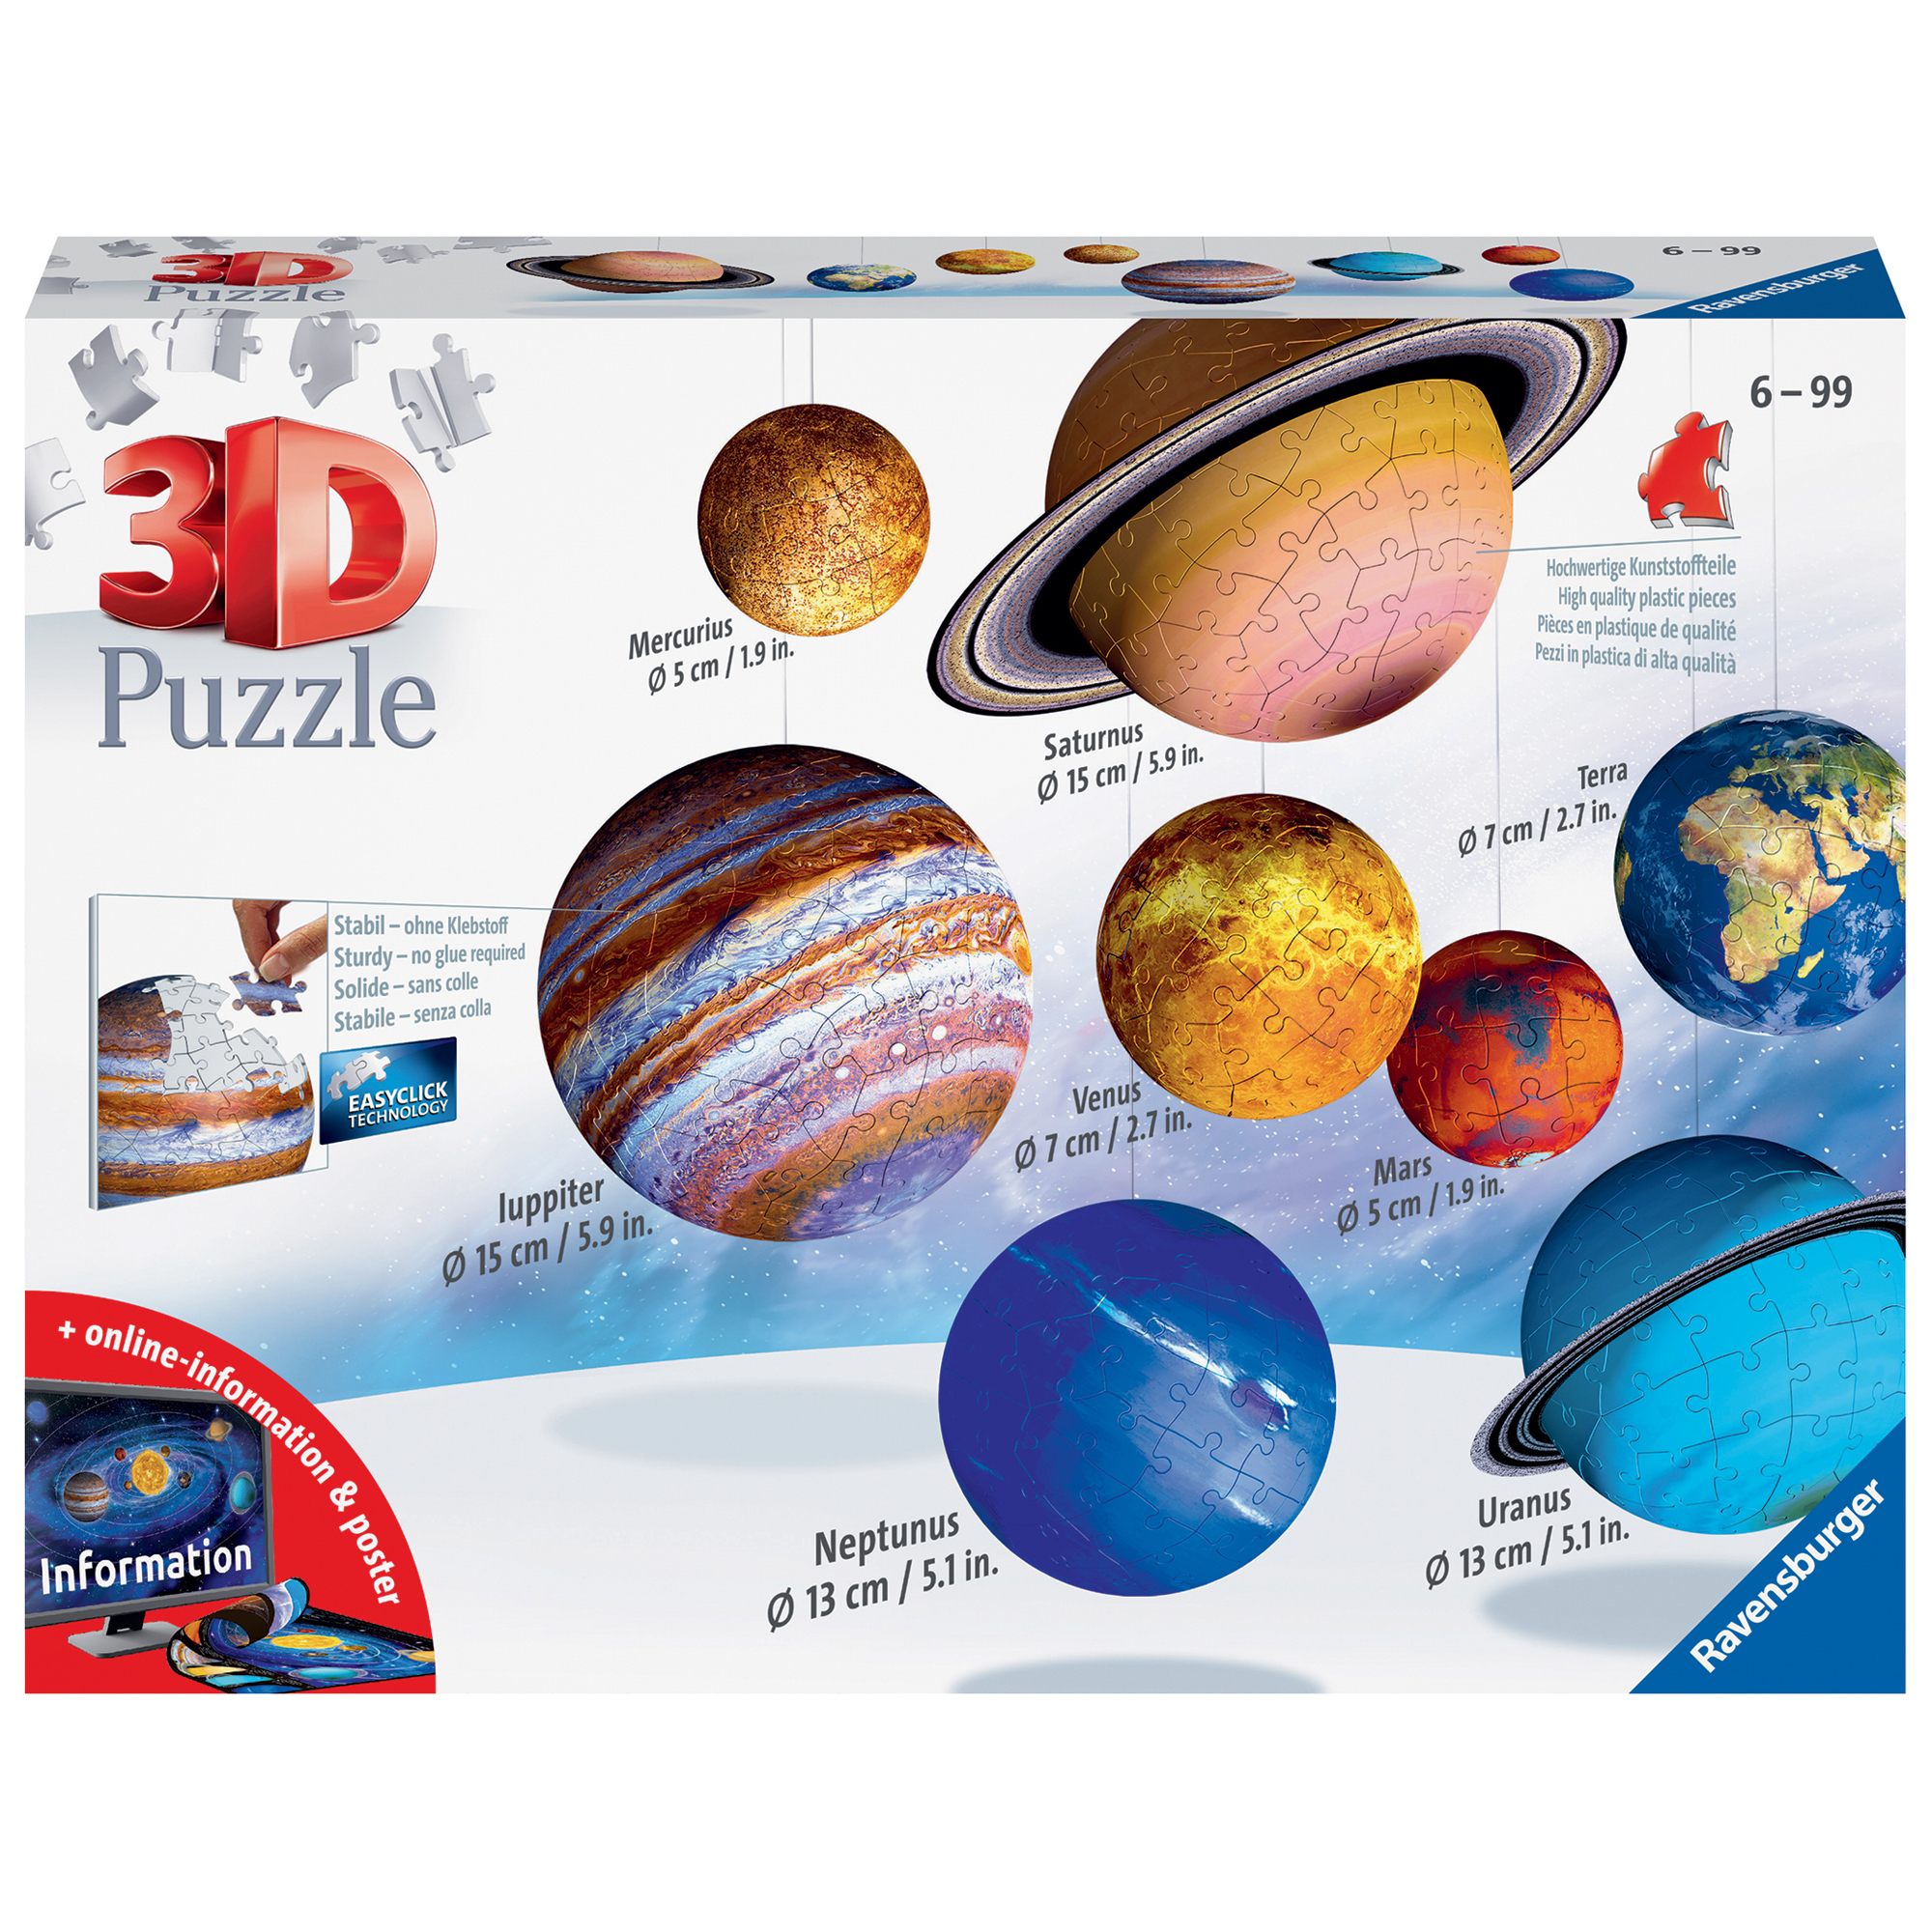 Ravensburger 3d puzzle il sistema planetario,522 pezzi - Ravensburger